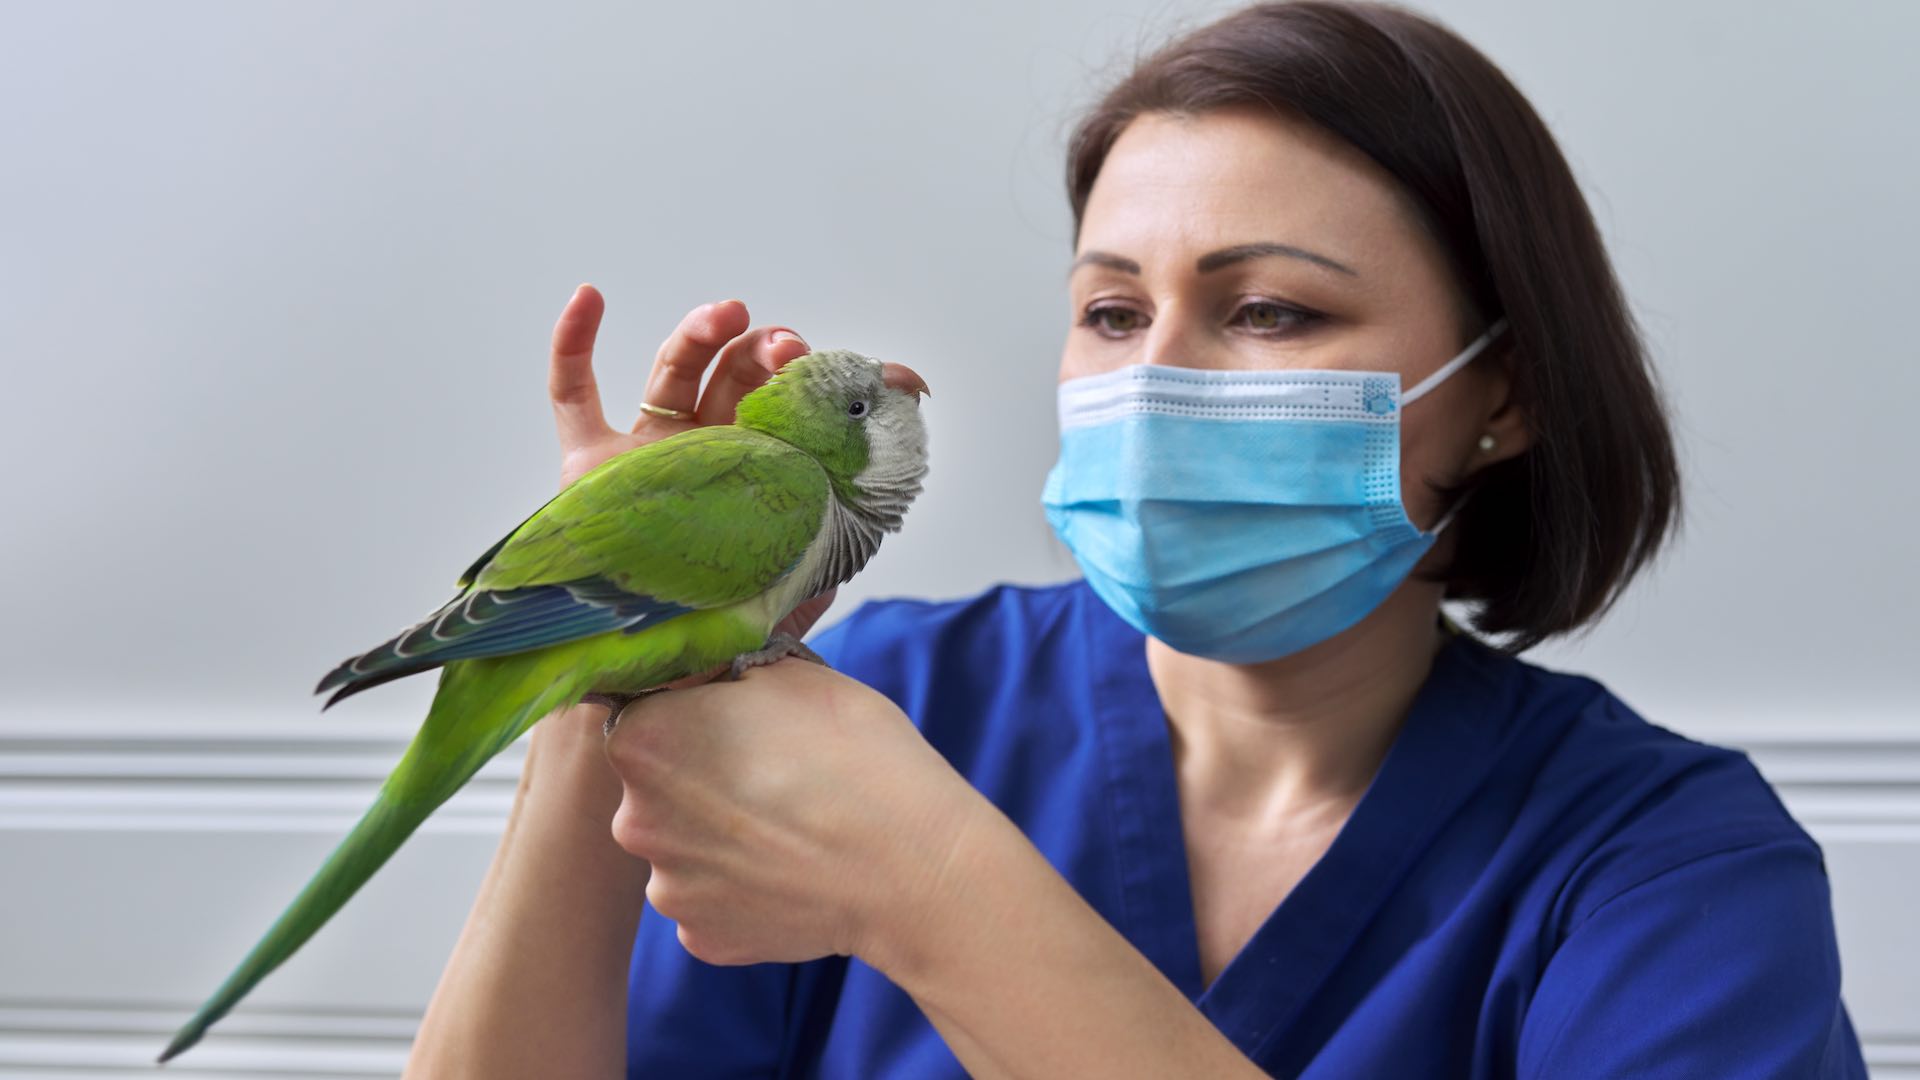 South American wildlife ravaged by H5N1 bird flu outbreak